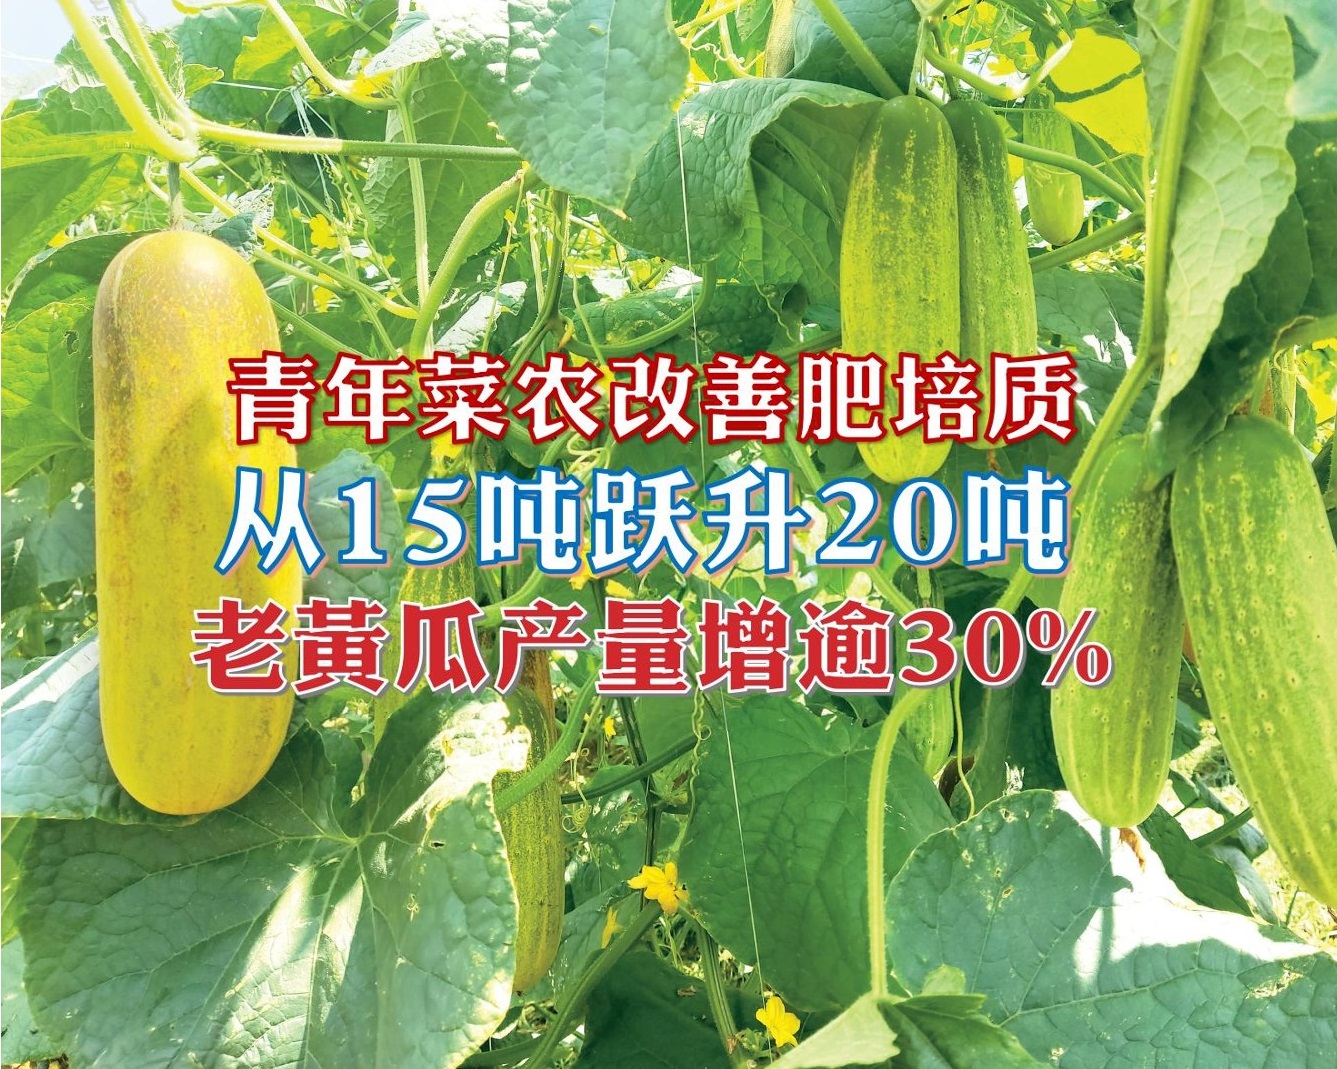 青年菜农改善肥培  老黄瓜产量增逾30% - 农牧世界